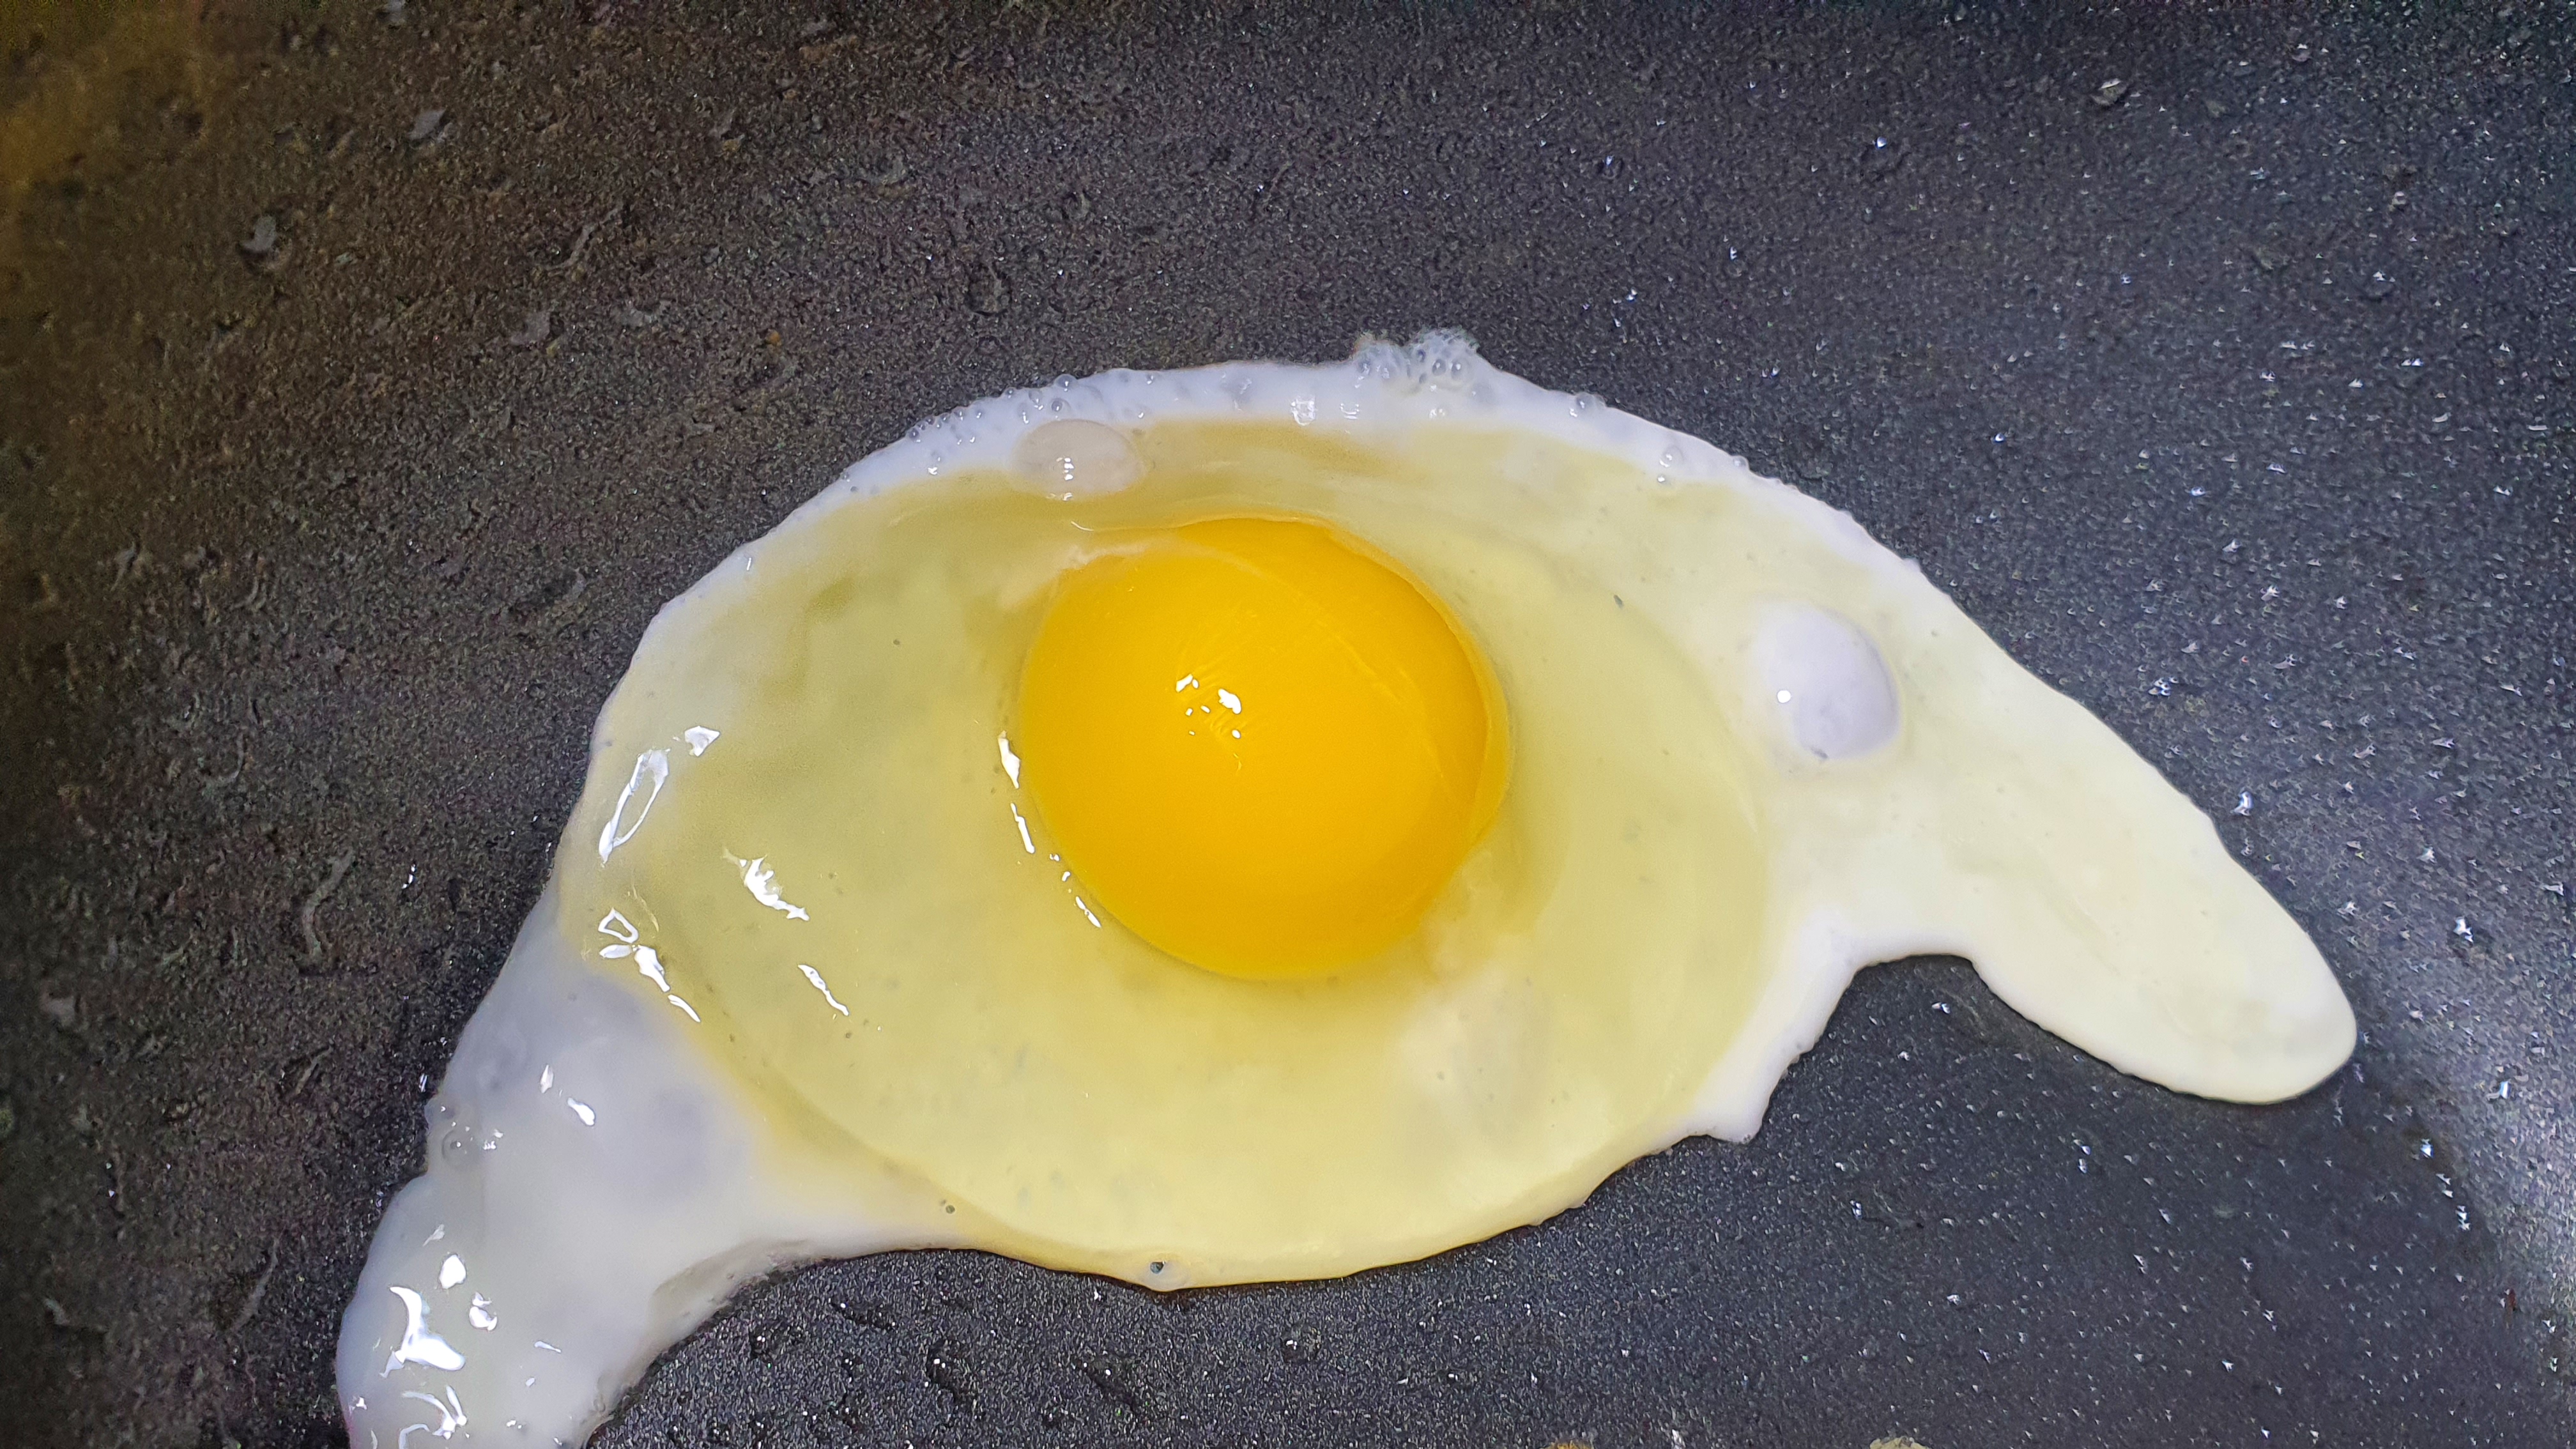 계란후라이 하는 장면/흰자가 탱글탱글함